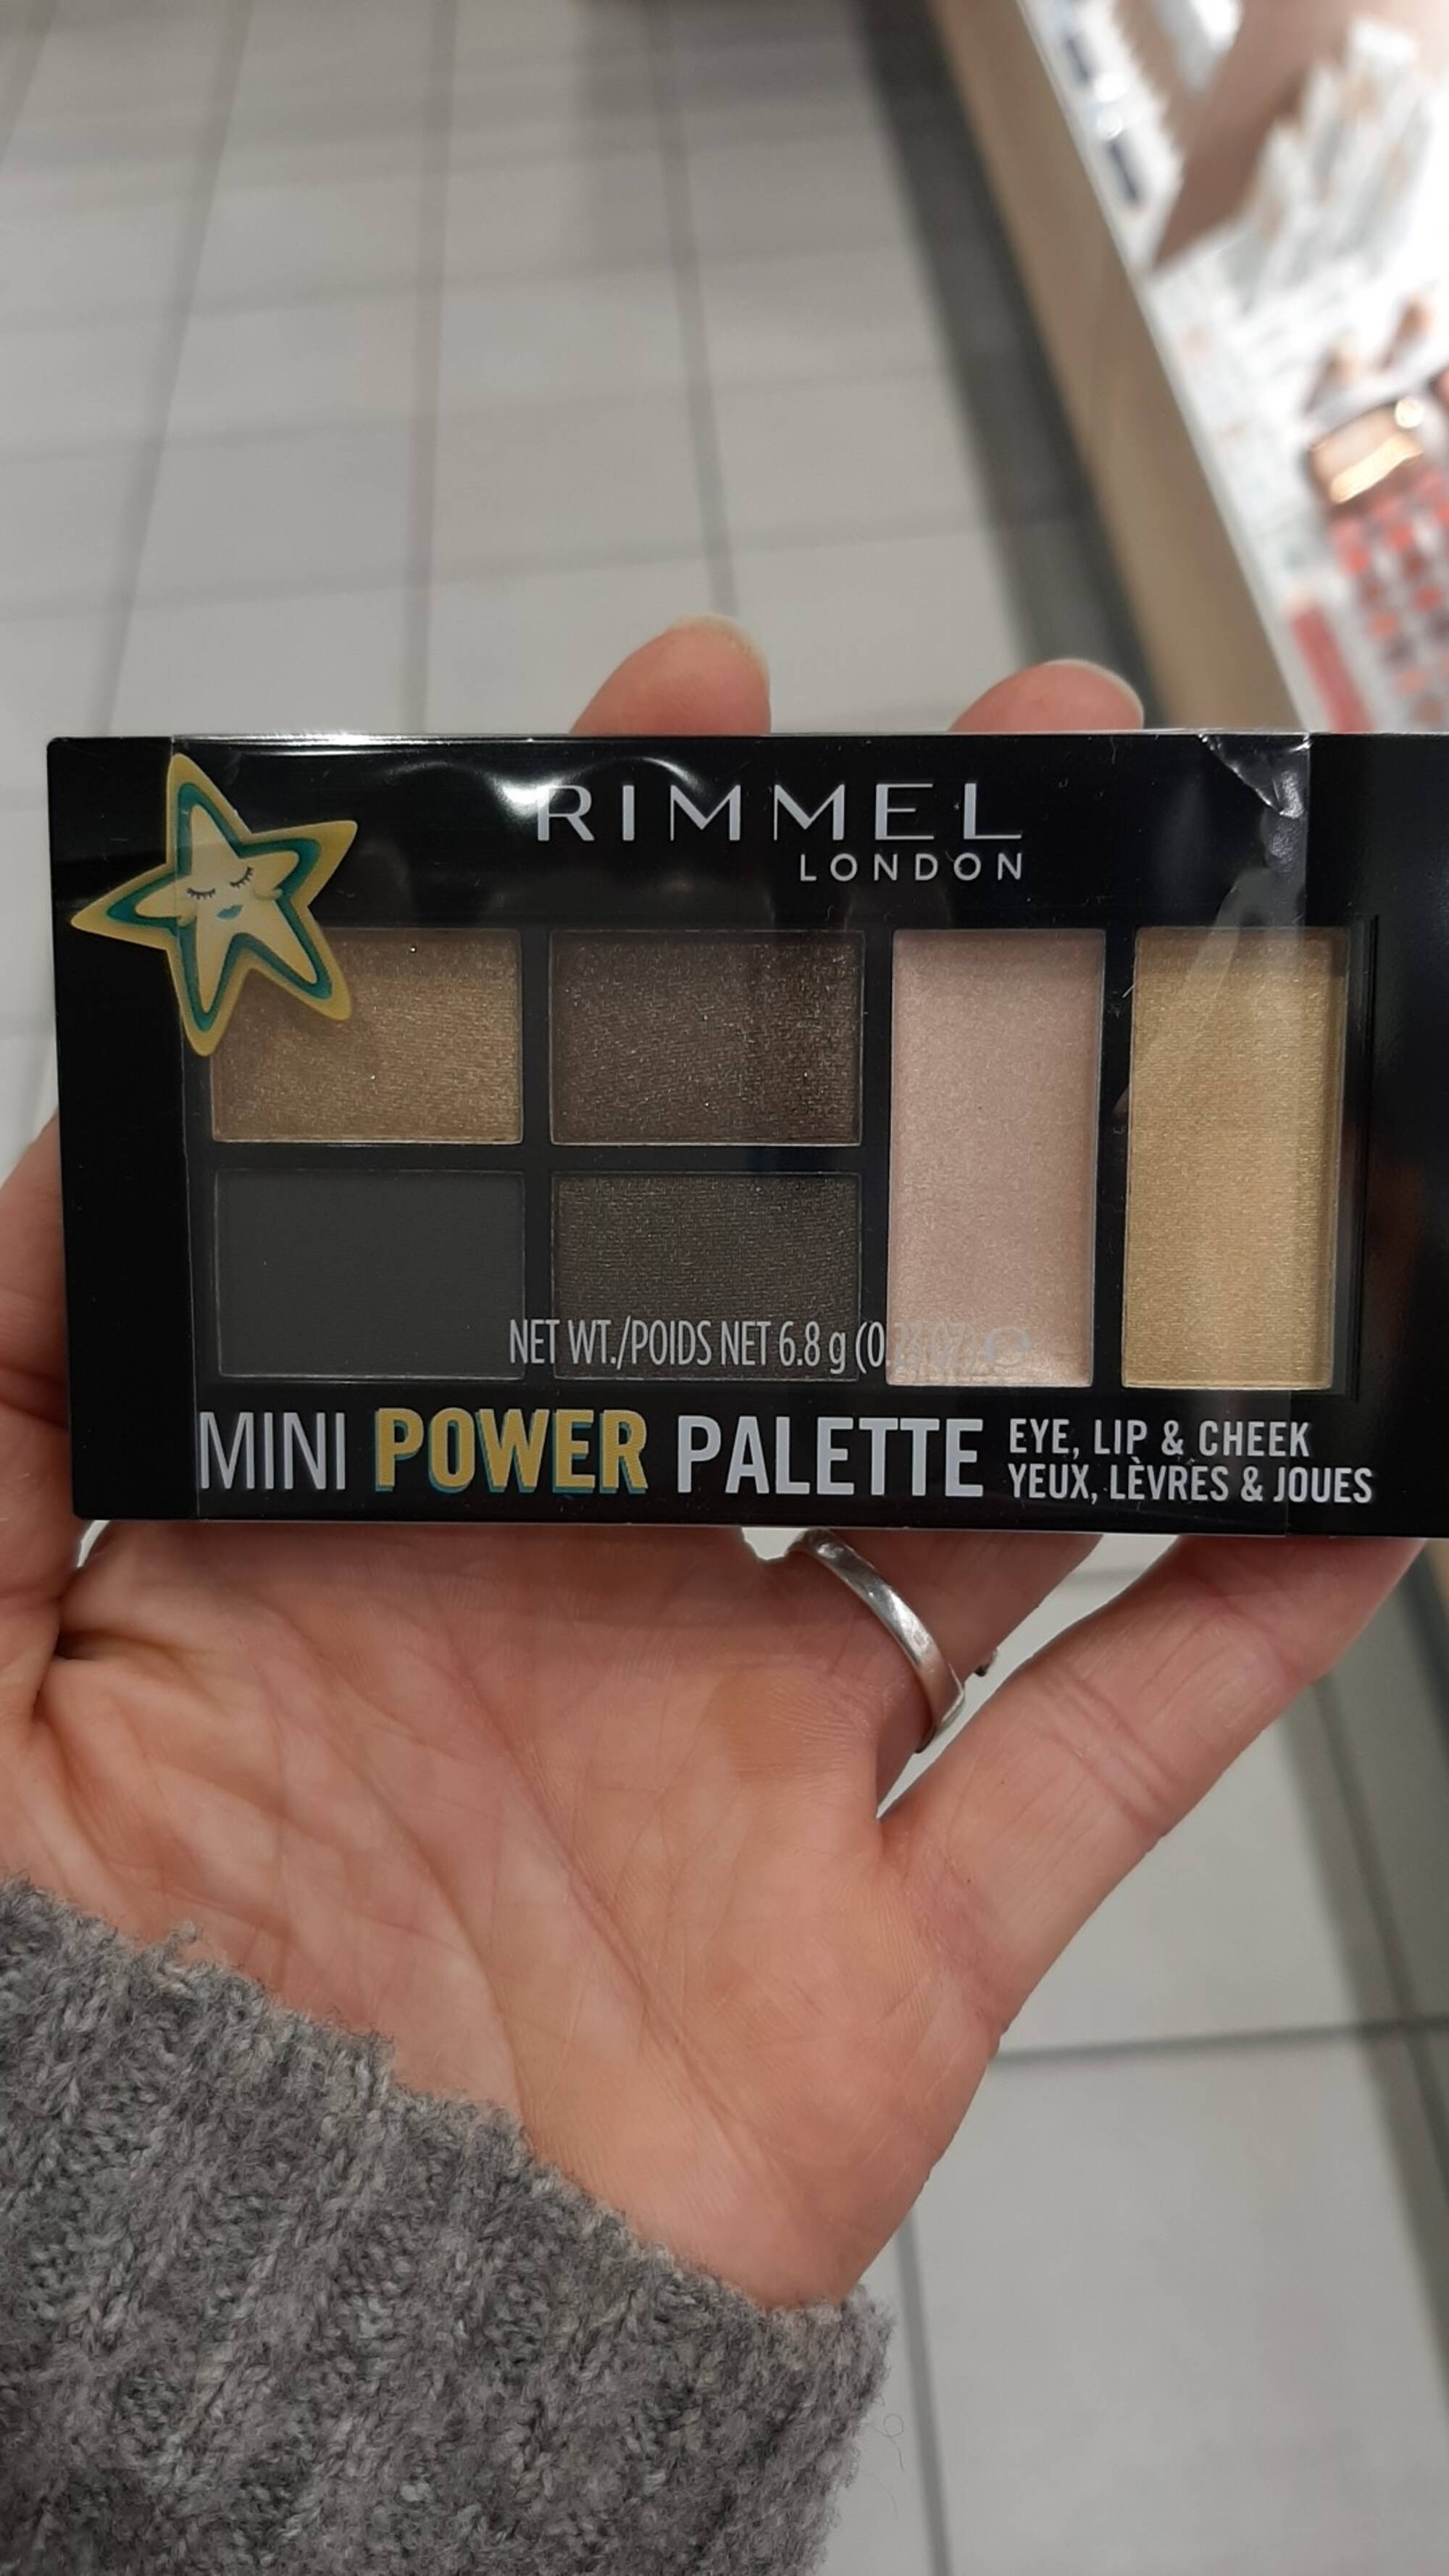 RIMMEL - Mini power palette - Yeux, lèvres & joues